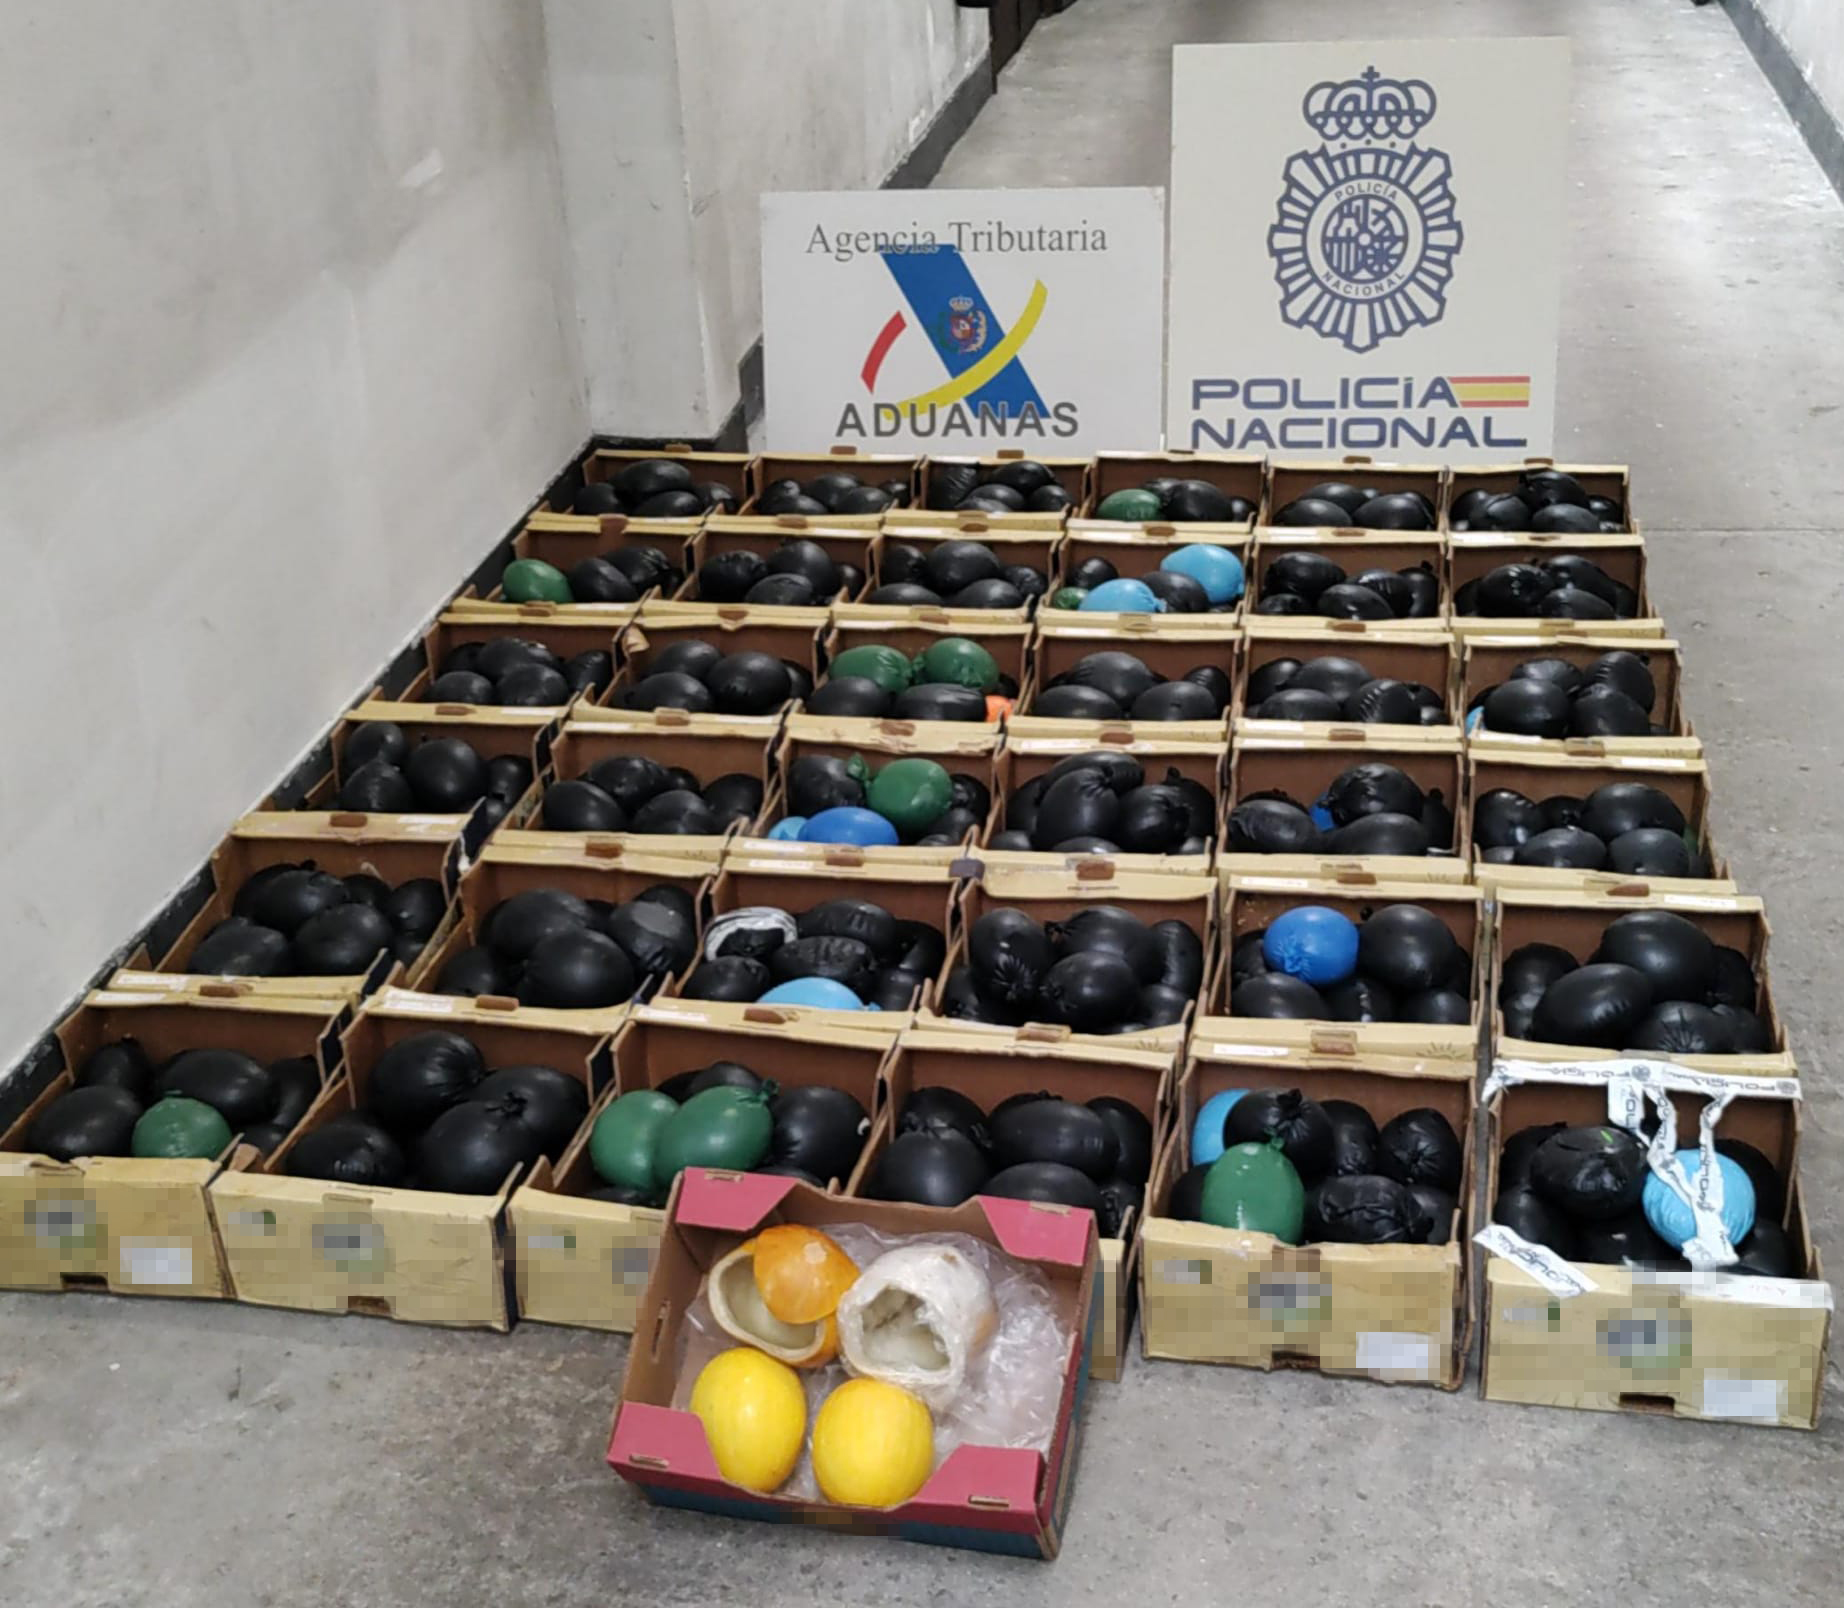 Intervenidos en Vigo cerca de 500 kilos de cocaína en el interior de melones